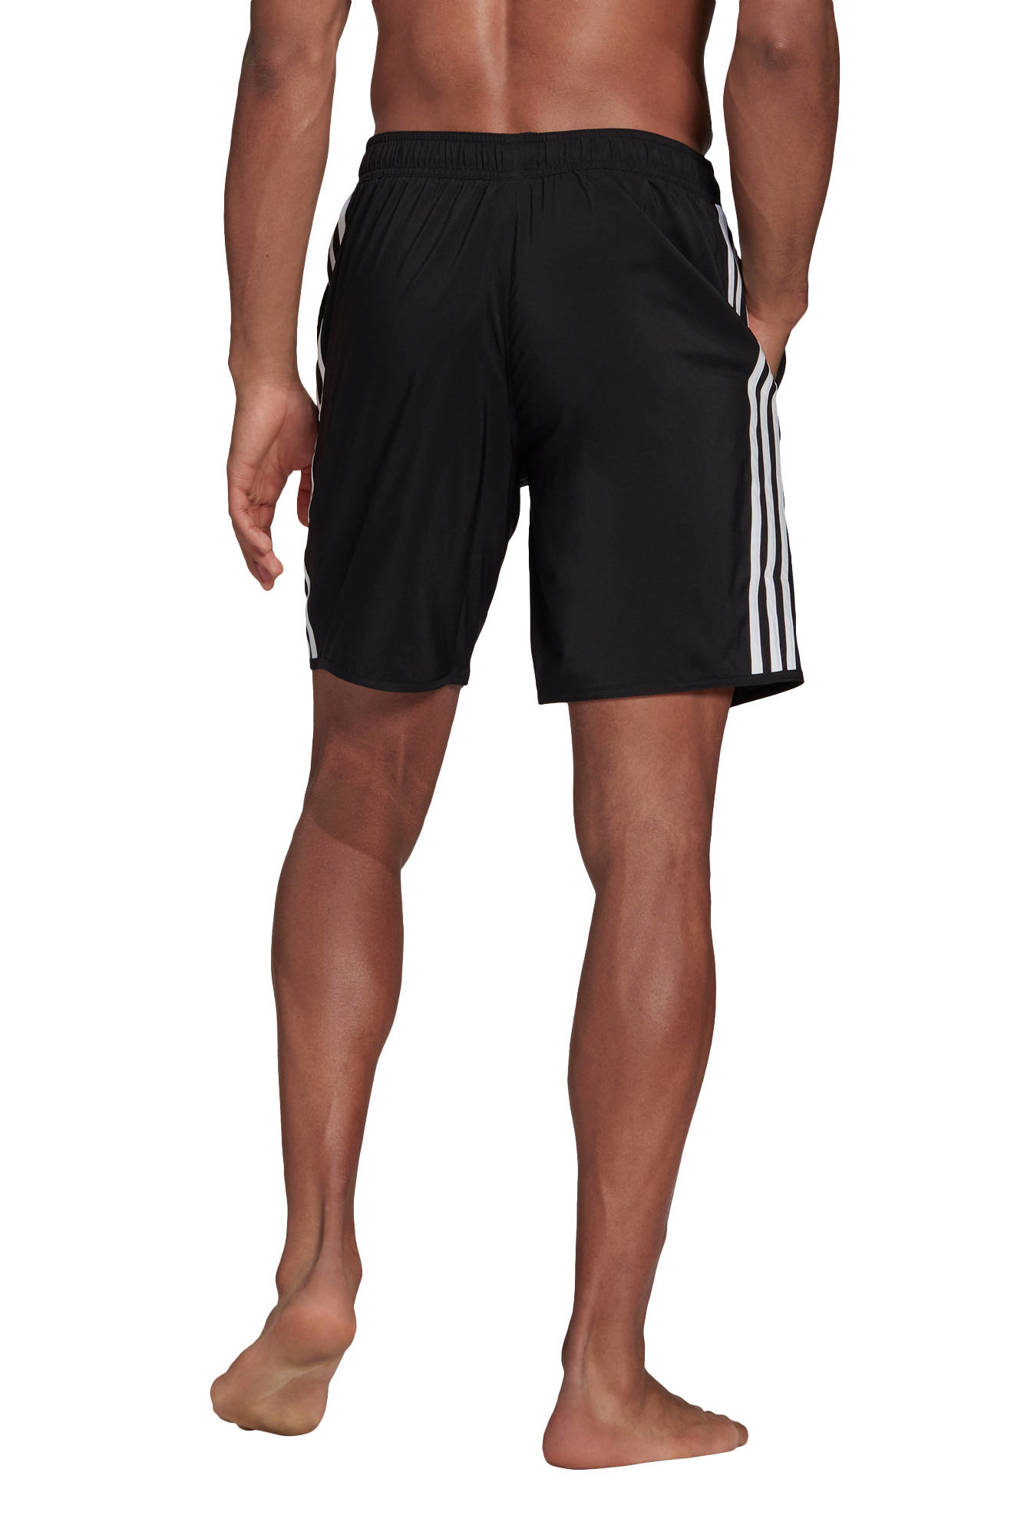 vertel het me Verbetering moeilijk adidas Performance zwemshort zwart/wit | wehkamp